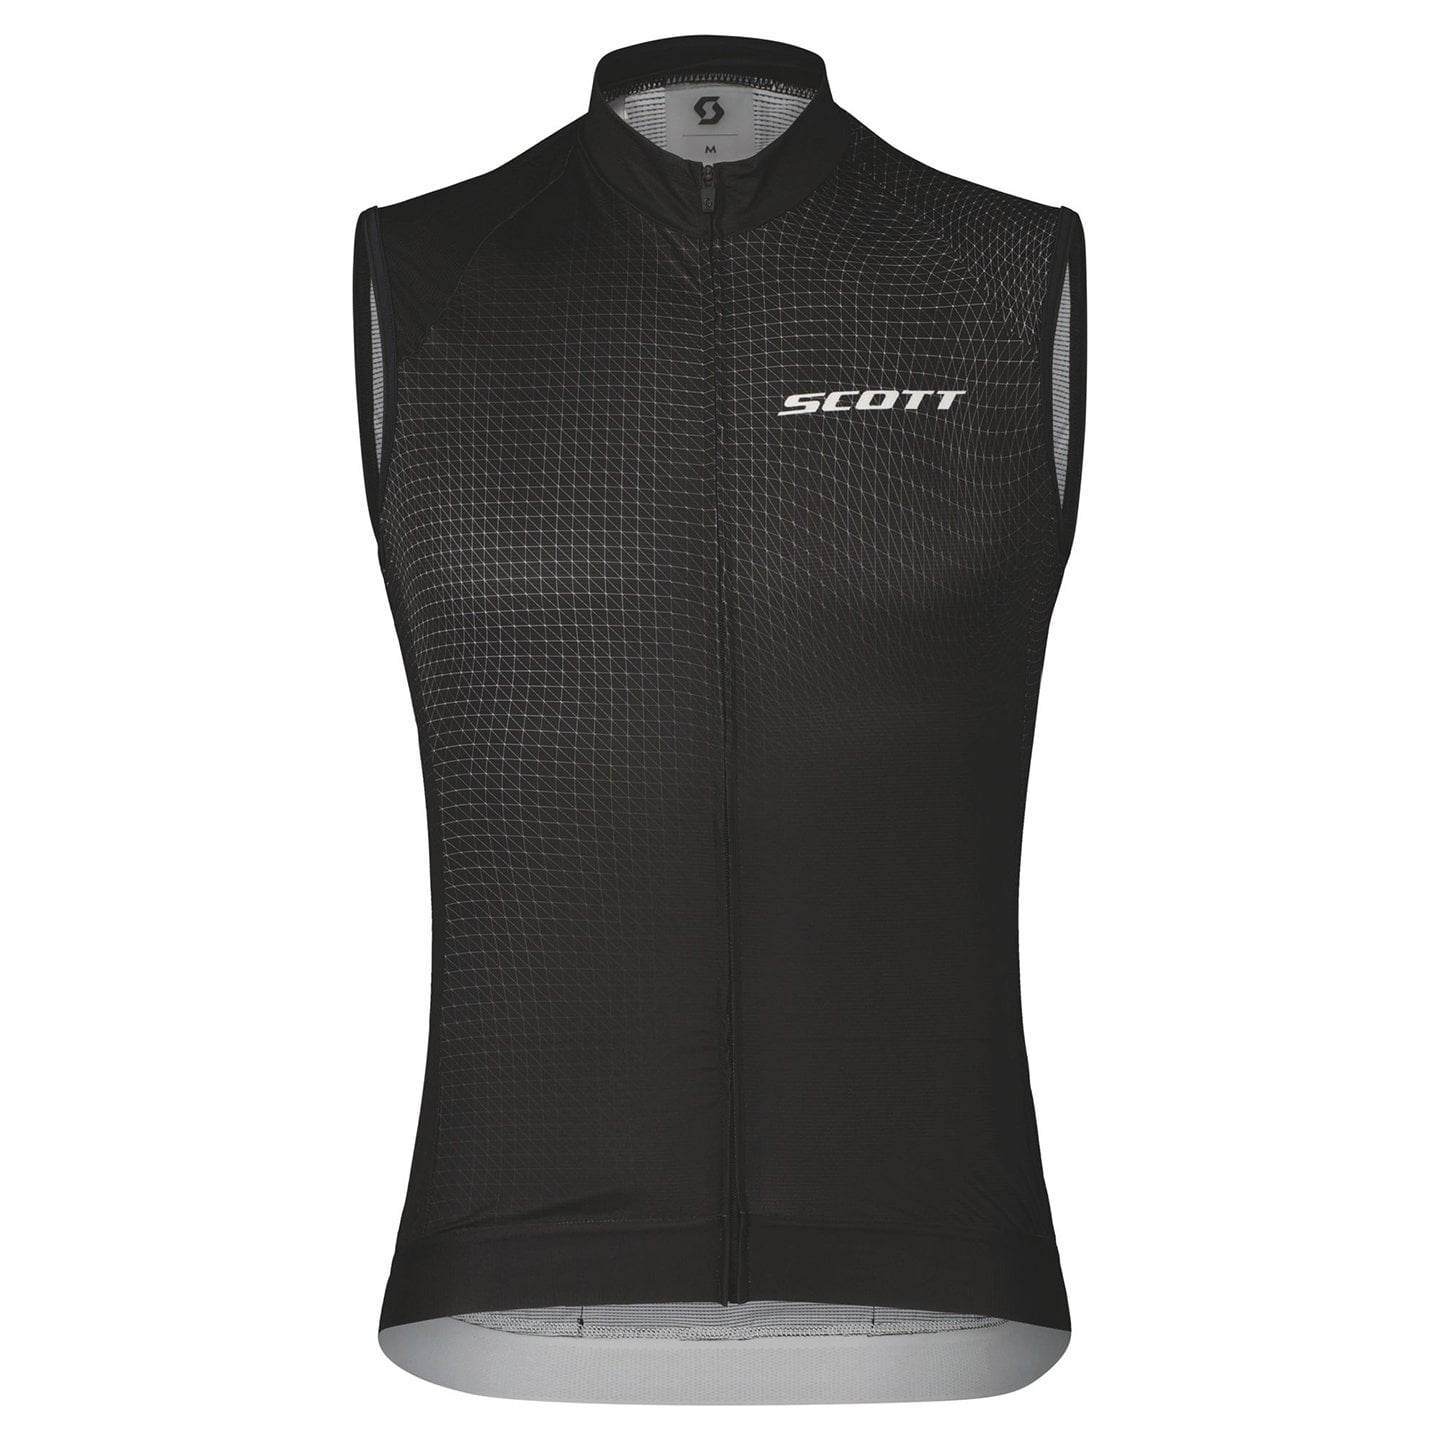 SCOTT RC Pro Sleeveless Cycling Jersey Sleeveless Jersey, for men, size L, Cycling jersey, Cycling clothing